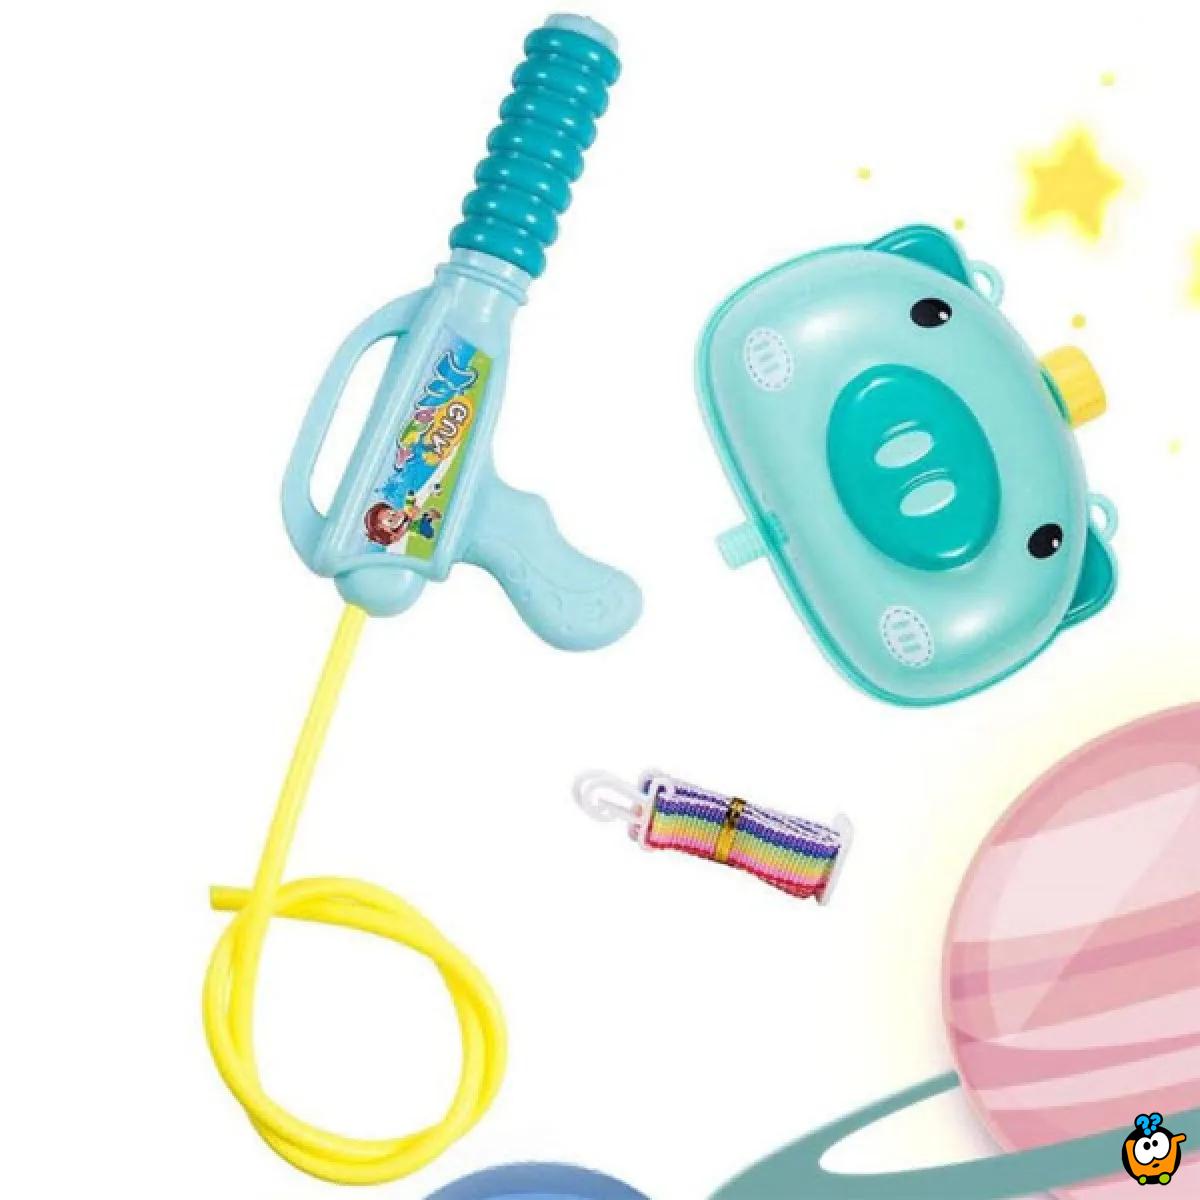 Water Toy - Vodena zabava za decu u obliku praseta